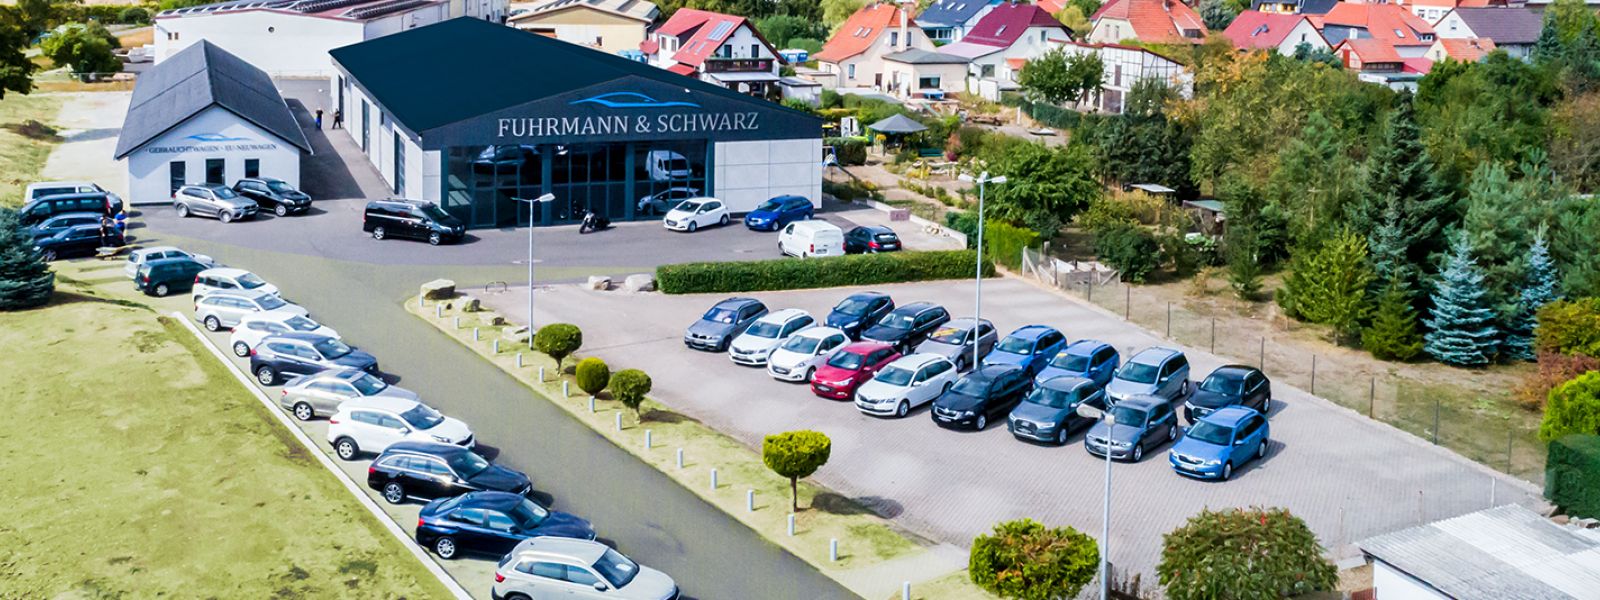 Autohaus Fuhrmann & Schwarz